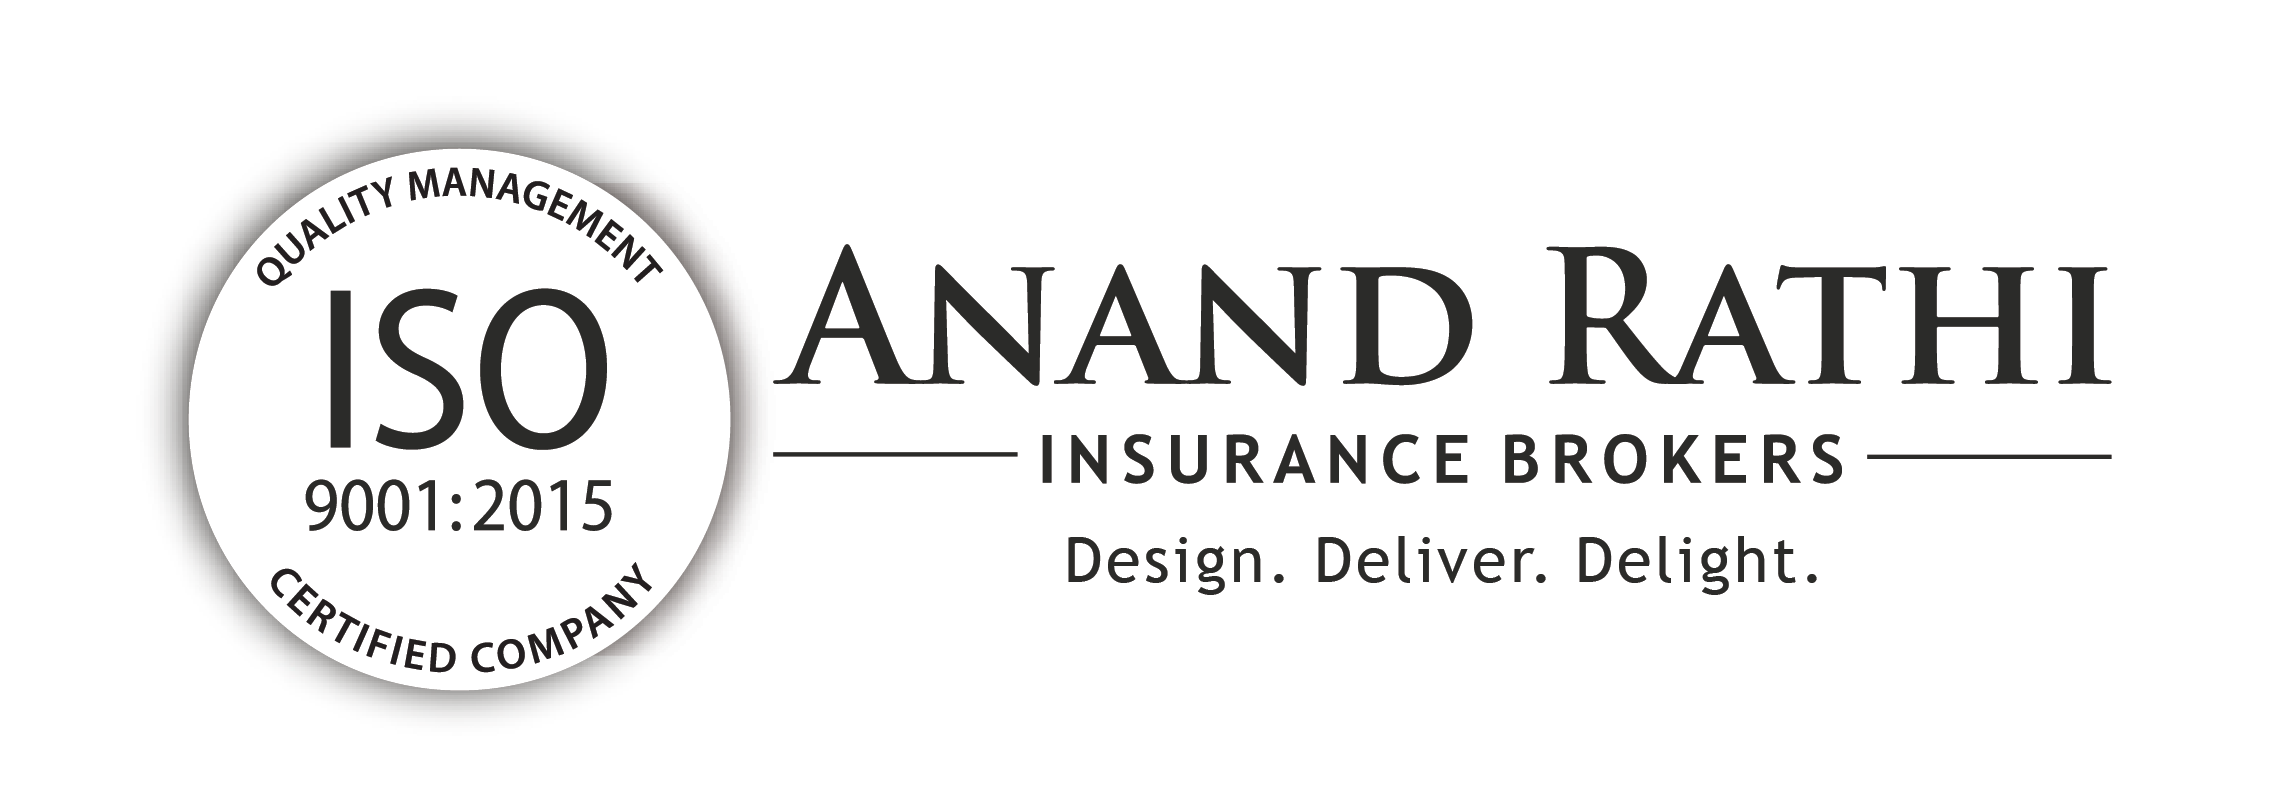 anandrathi-logo